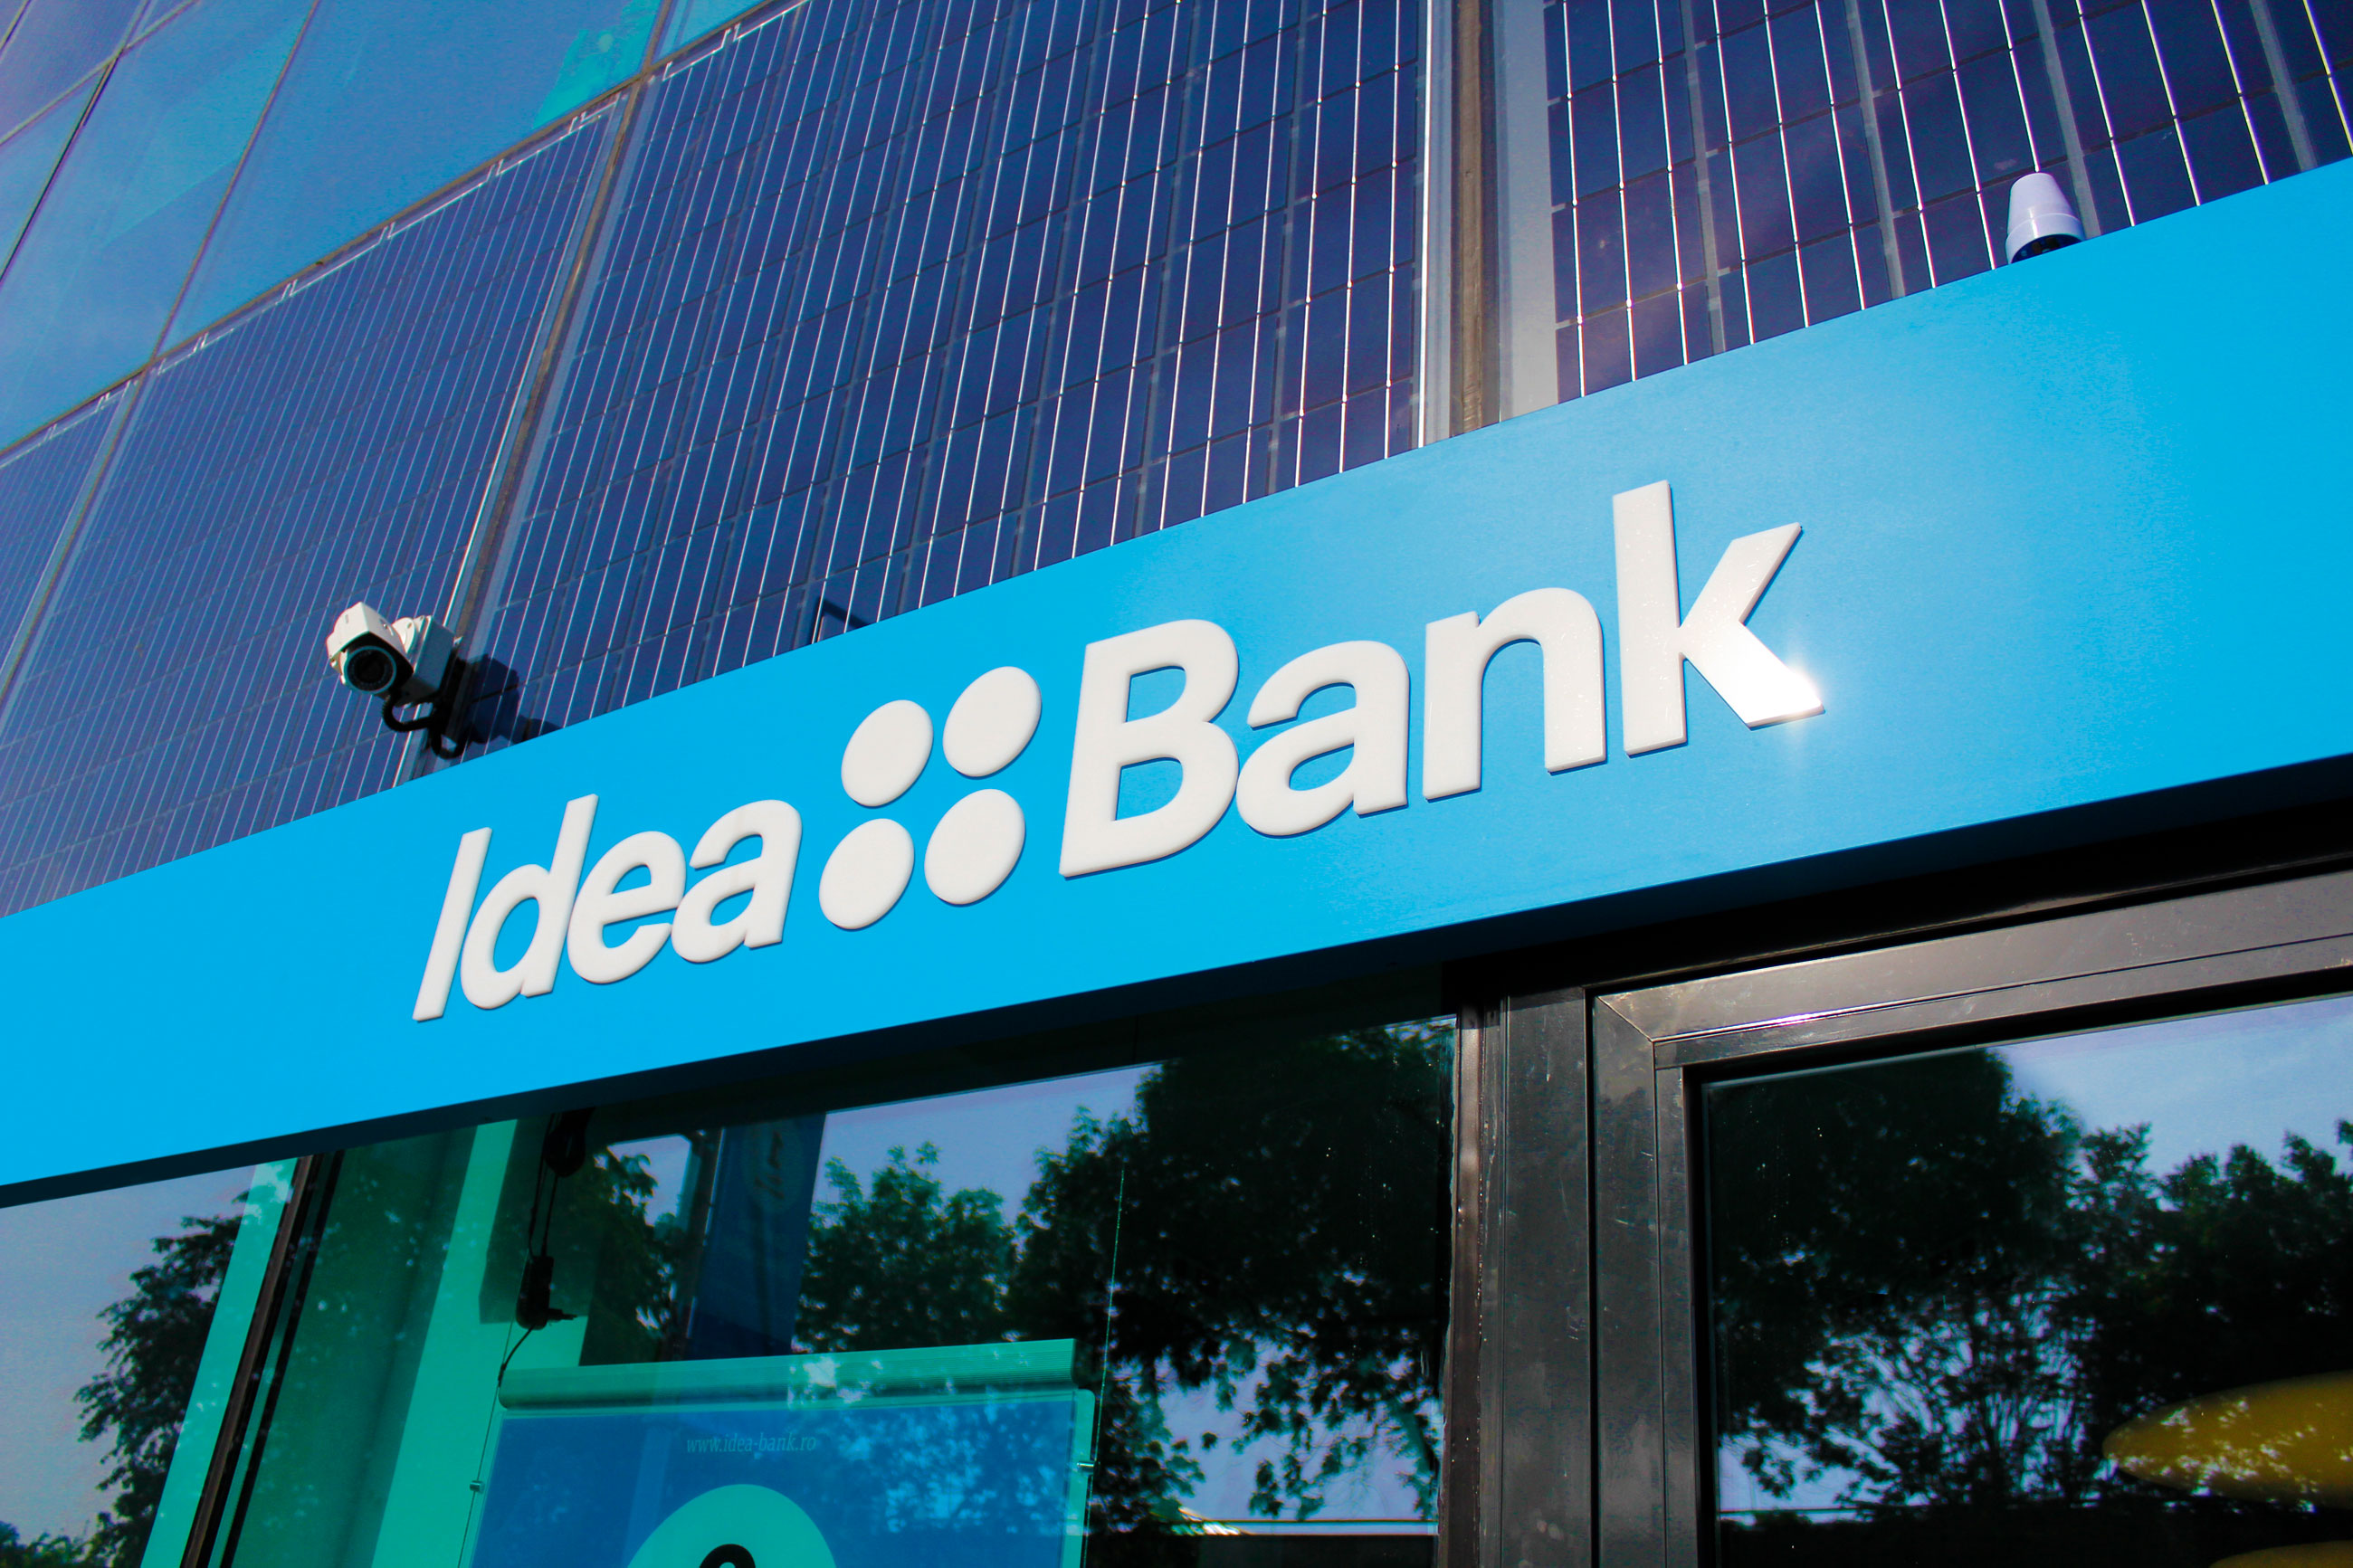 01-Idea-Bank-Brand-Localization-by-Brandient